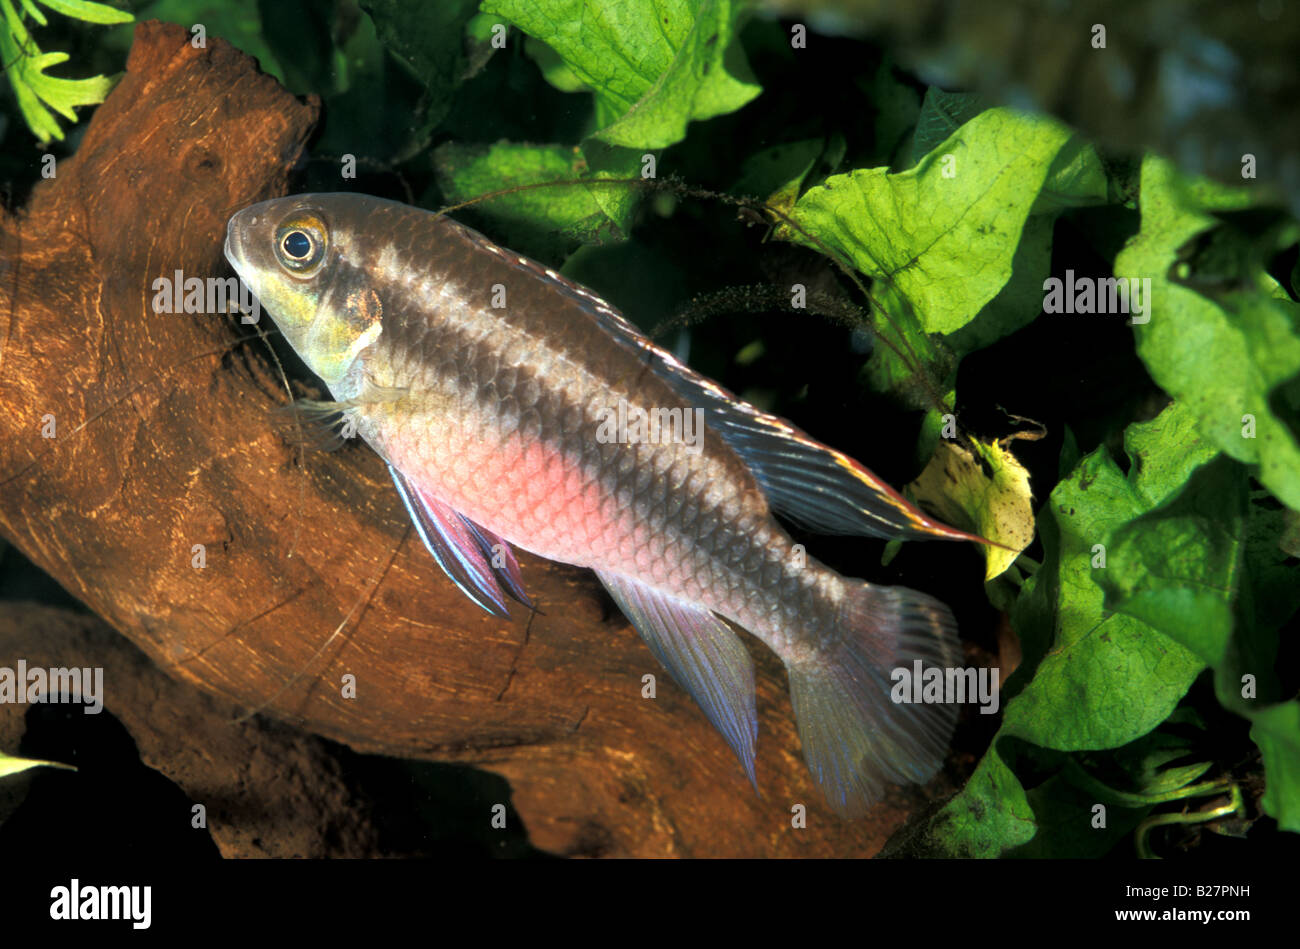 Pelvicachromis pulcher, female, Dward Cichlid, Africa Stock Photo